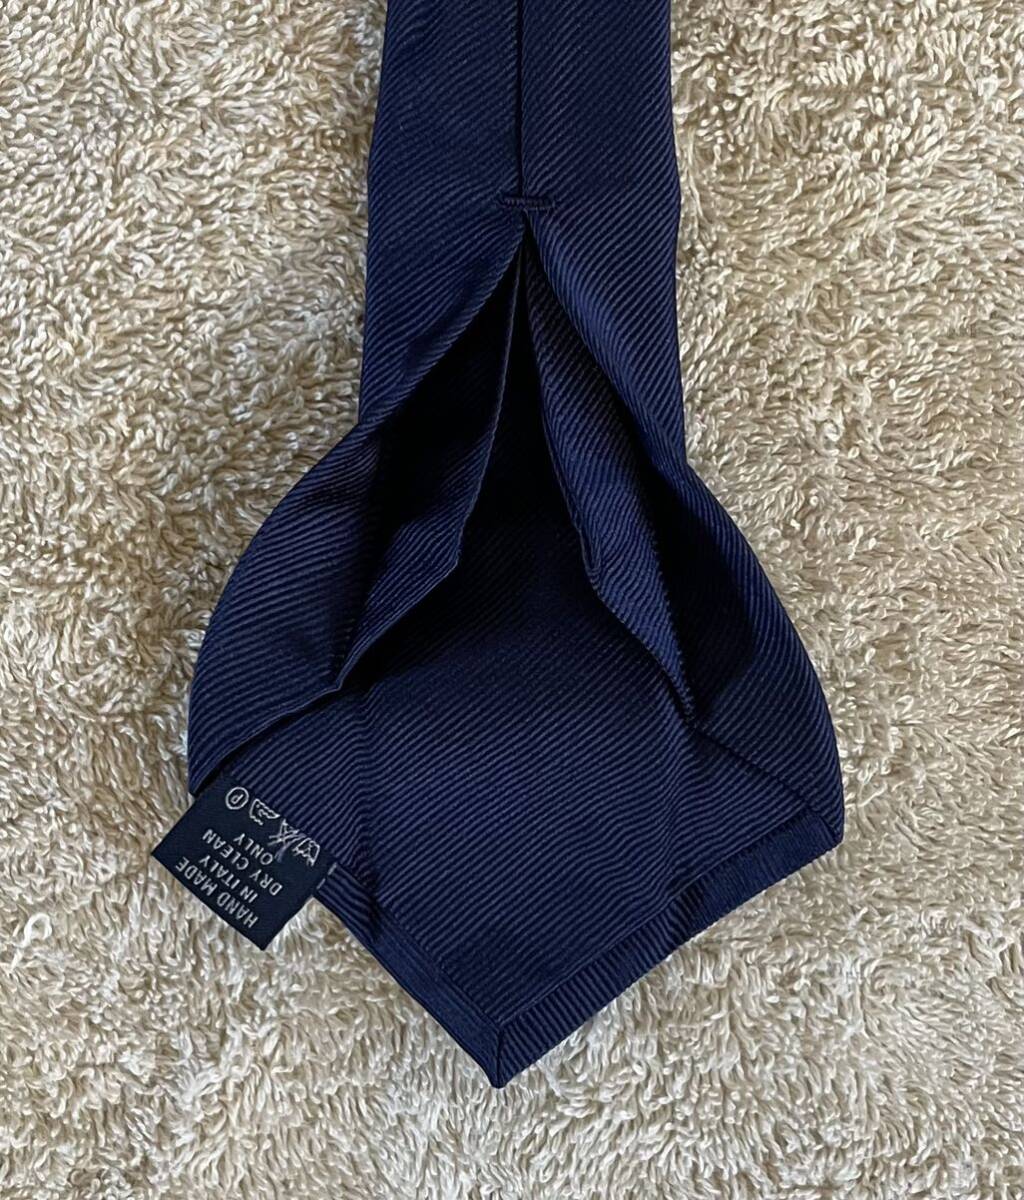  Anne jero*fsko Sette piege navy Thai necktie Italy made solid Thai navy blue Anne jerofsko navy series 